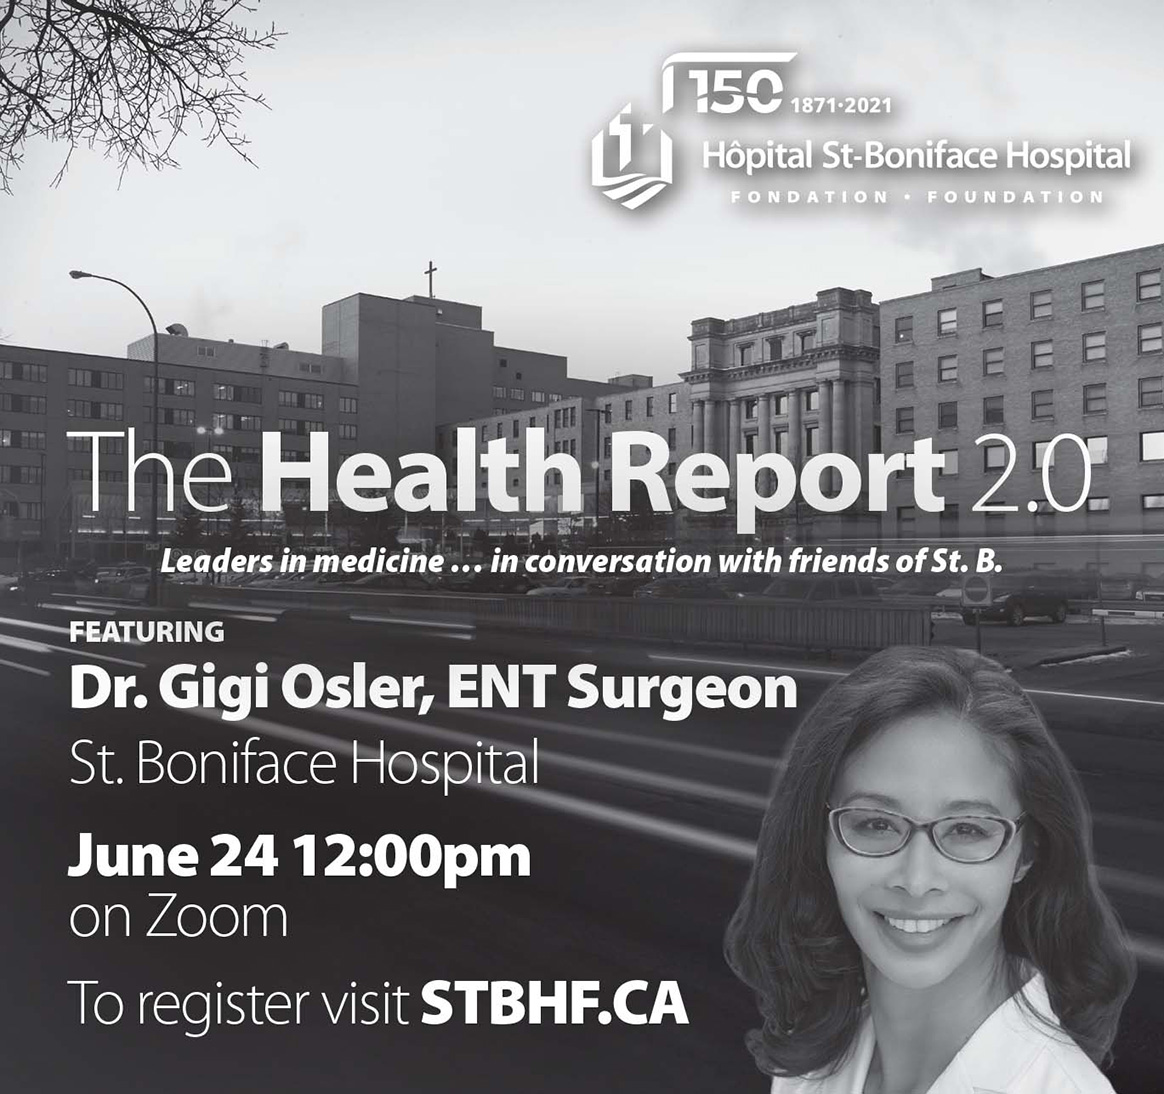 The Health Report 2.0 event invite